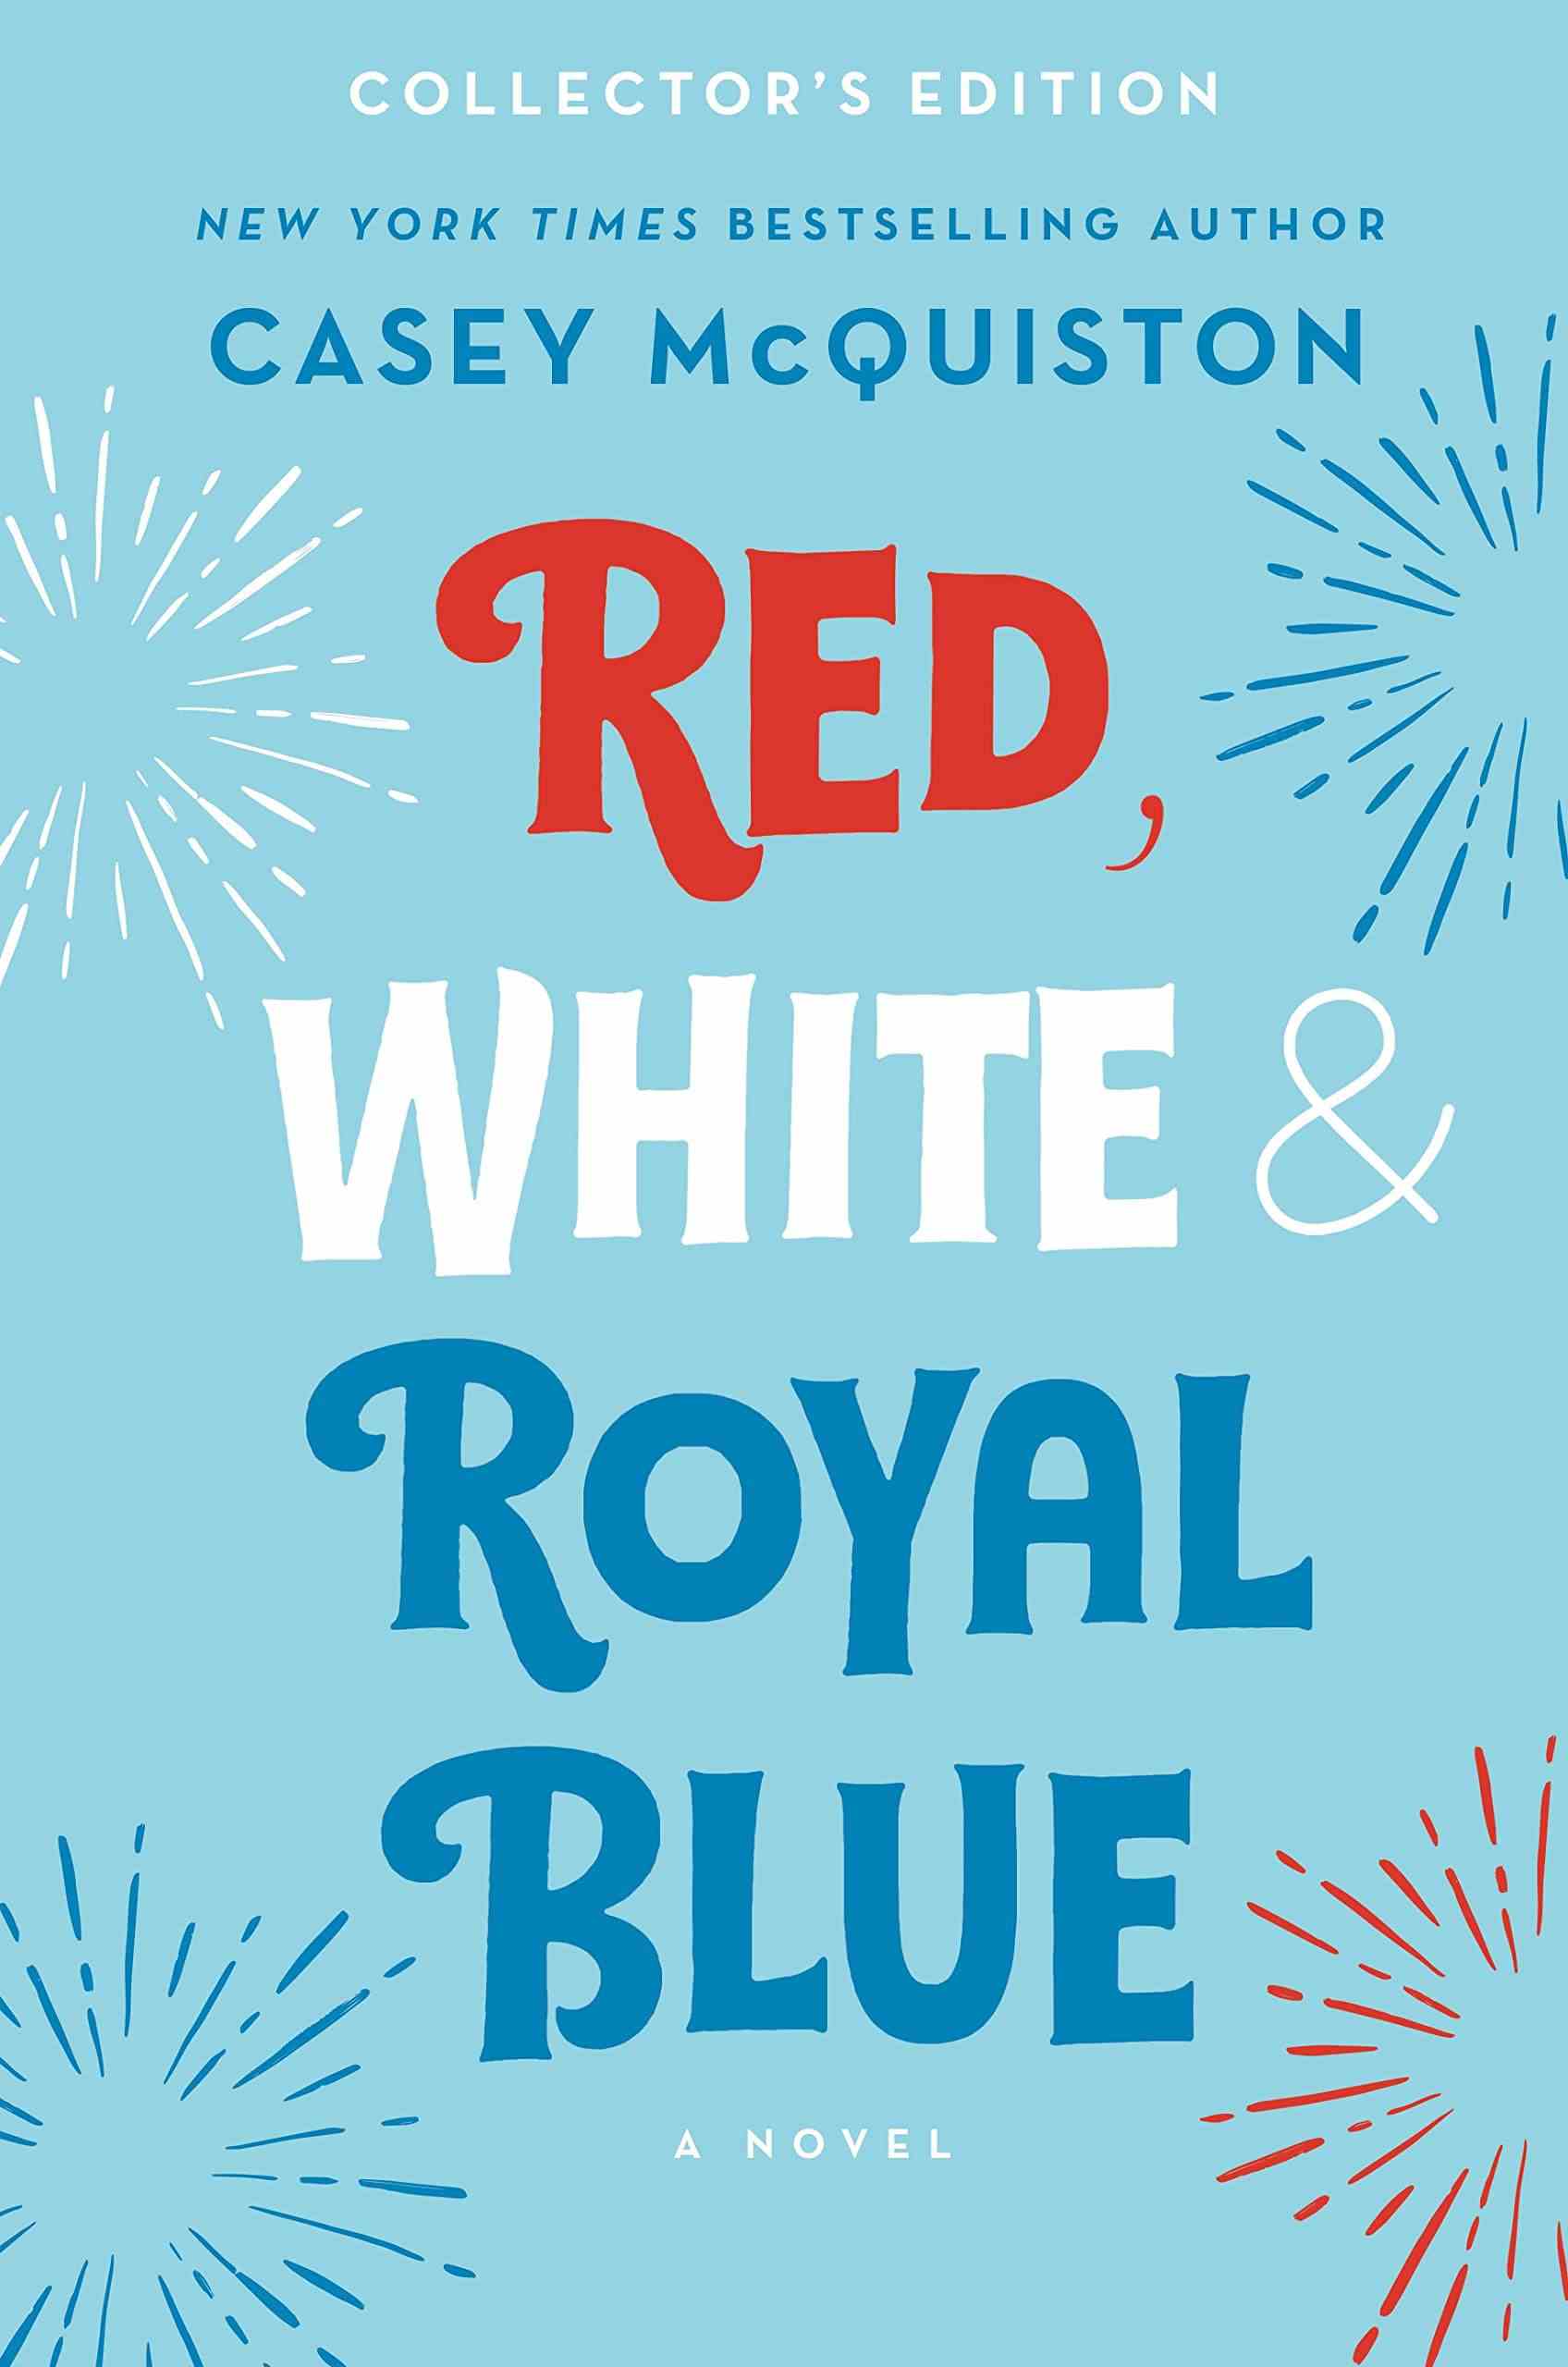 édition collector de Red, White, and Royal Blue de Casey McQuiston, montrant le texte du titre en rouge, blanc et bleu sur un fond bleu clair